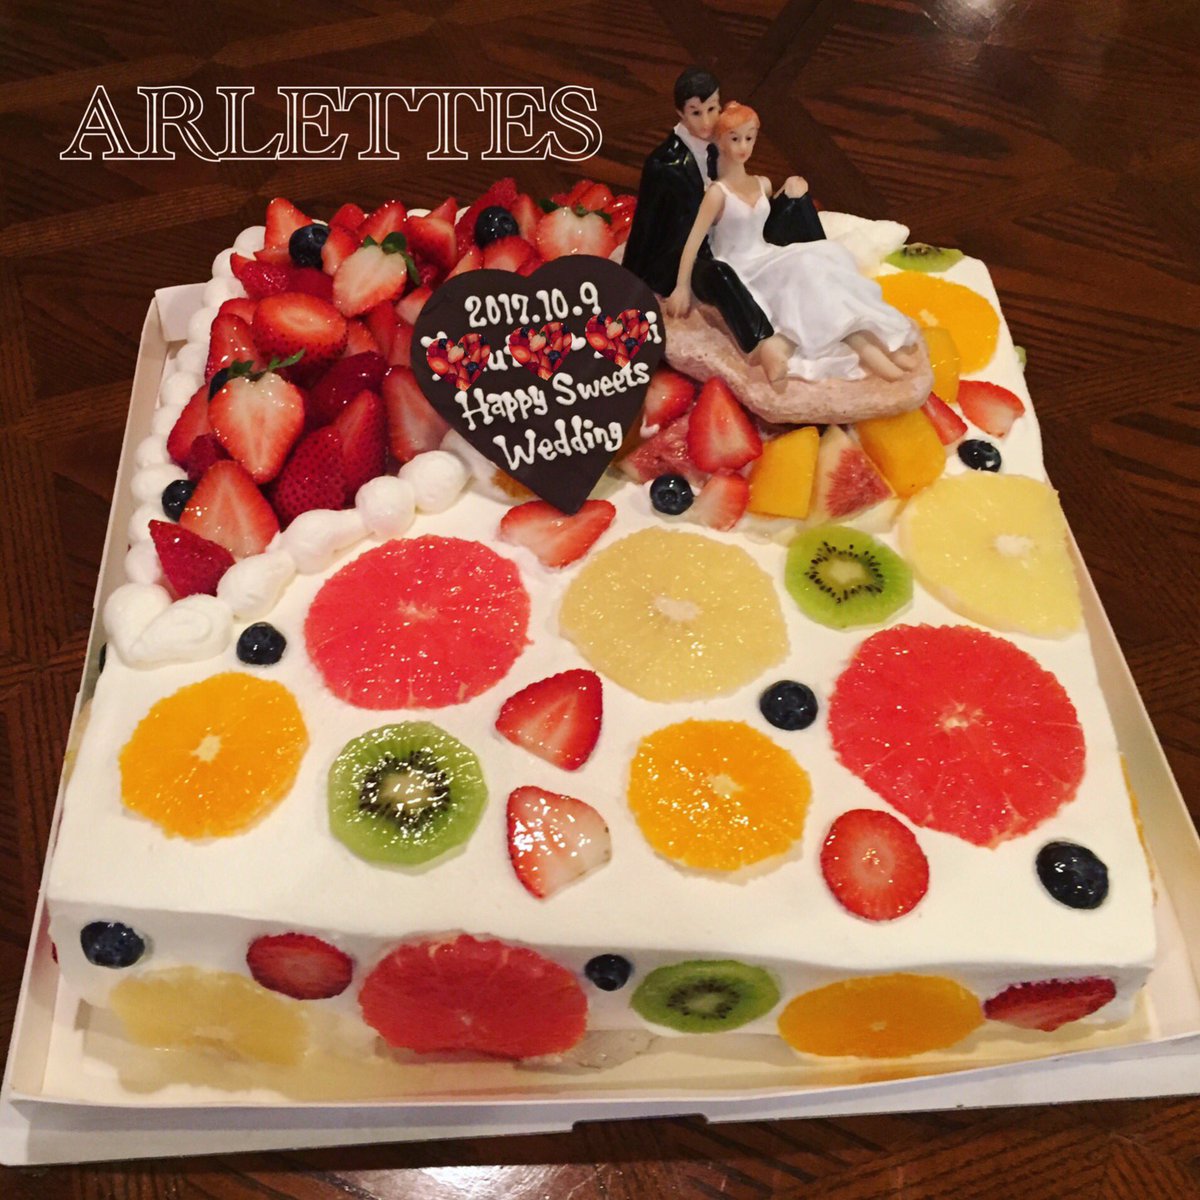 パティスリー アルレット Happywedding アルレット Arlettes キャラケーキ キャラクターケーキ イラストケーキ 洋菓子 スイーツ 新神戸 神戸 マカロン バースデーケーキ お誕生日会 バースデー ケーキ かわいい 誕生日おめでとう 神戸